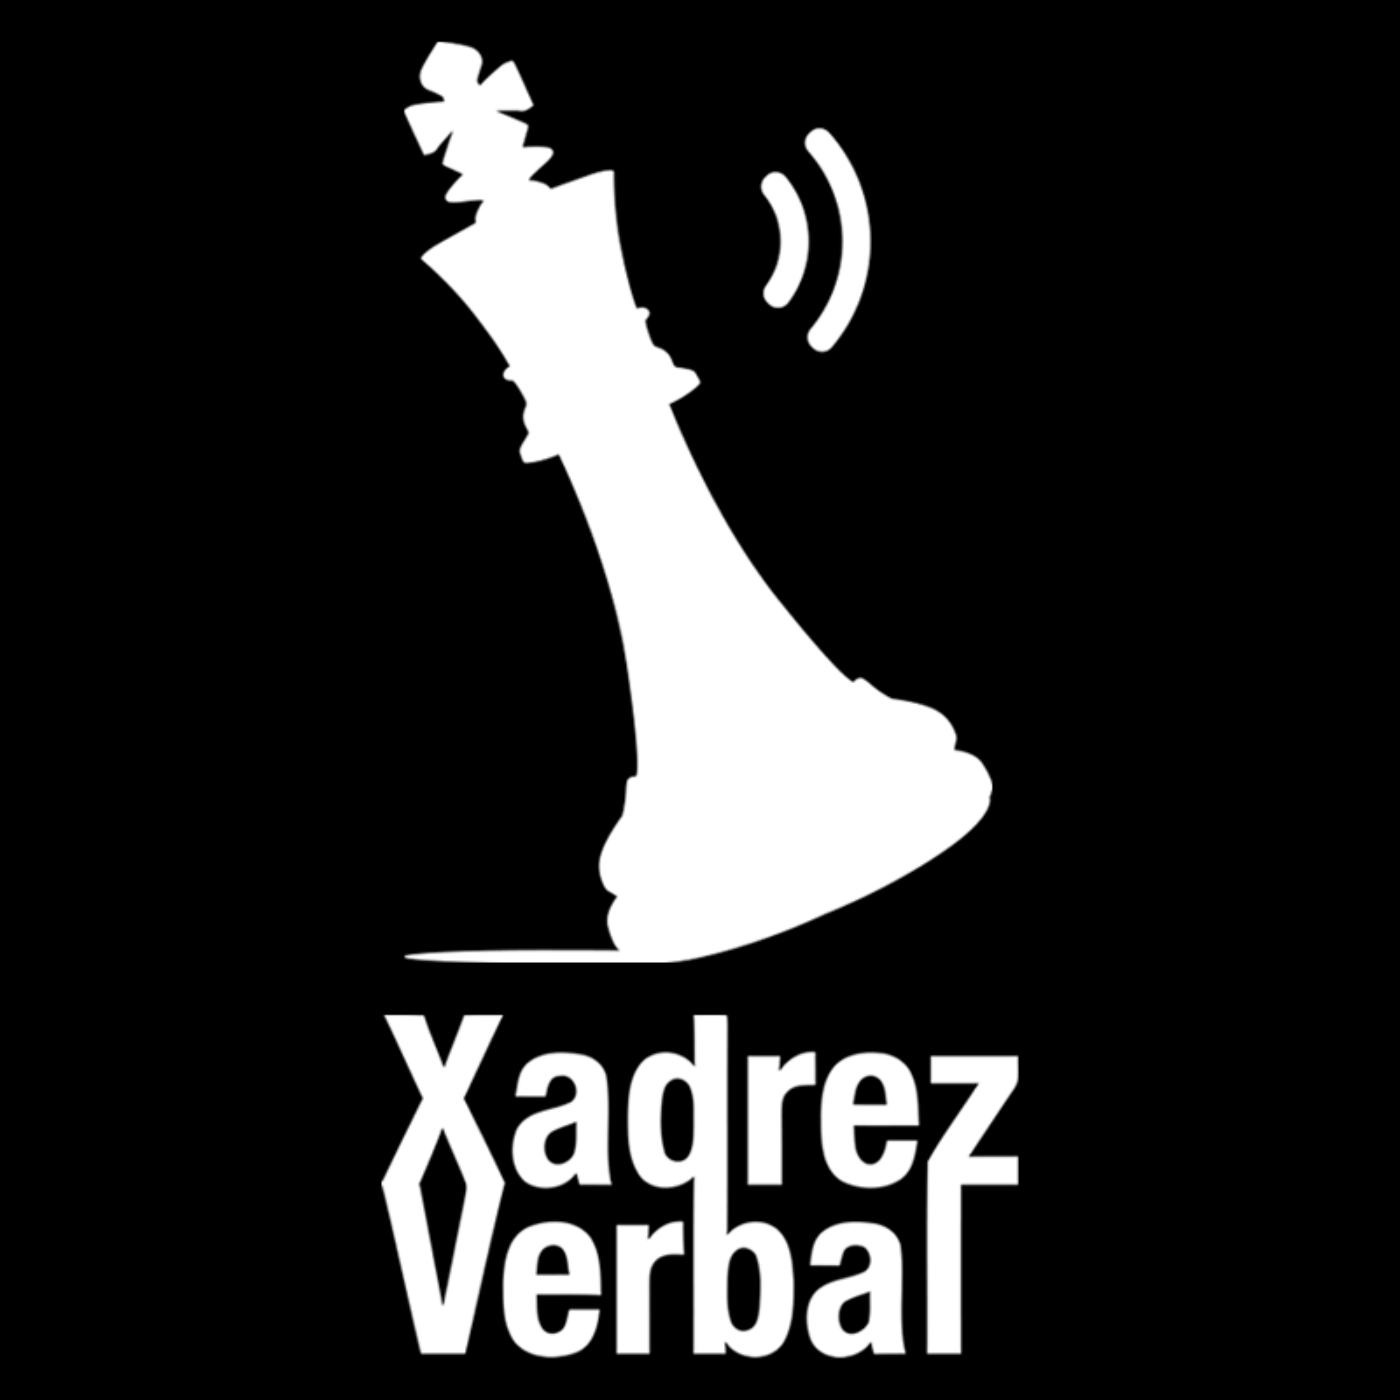 Xadrez Verbal Podcast Especial – 100 anos da Interpol e a CCF